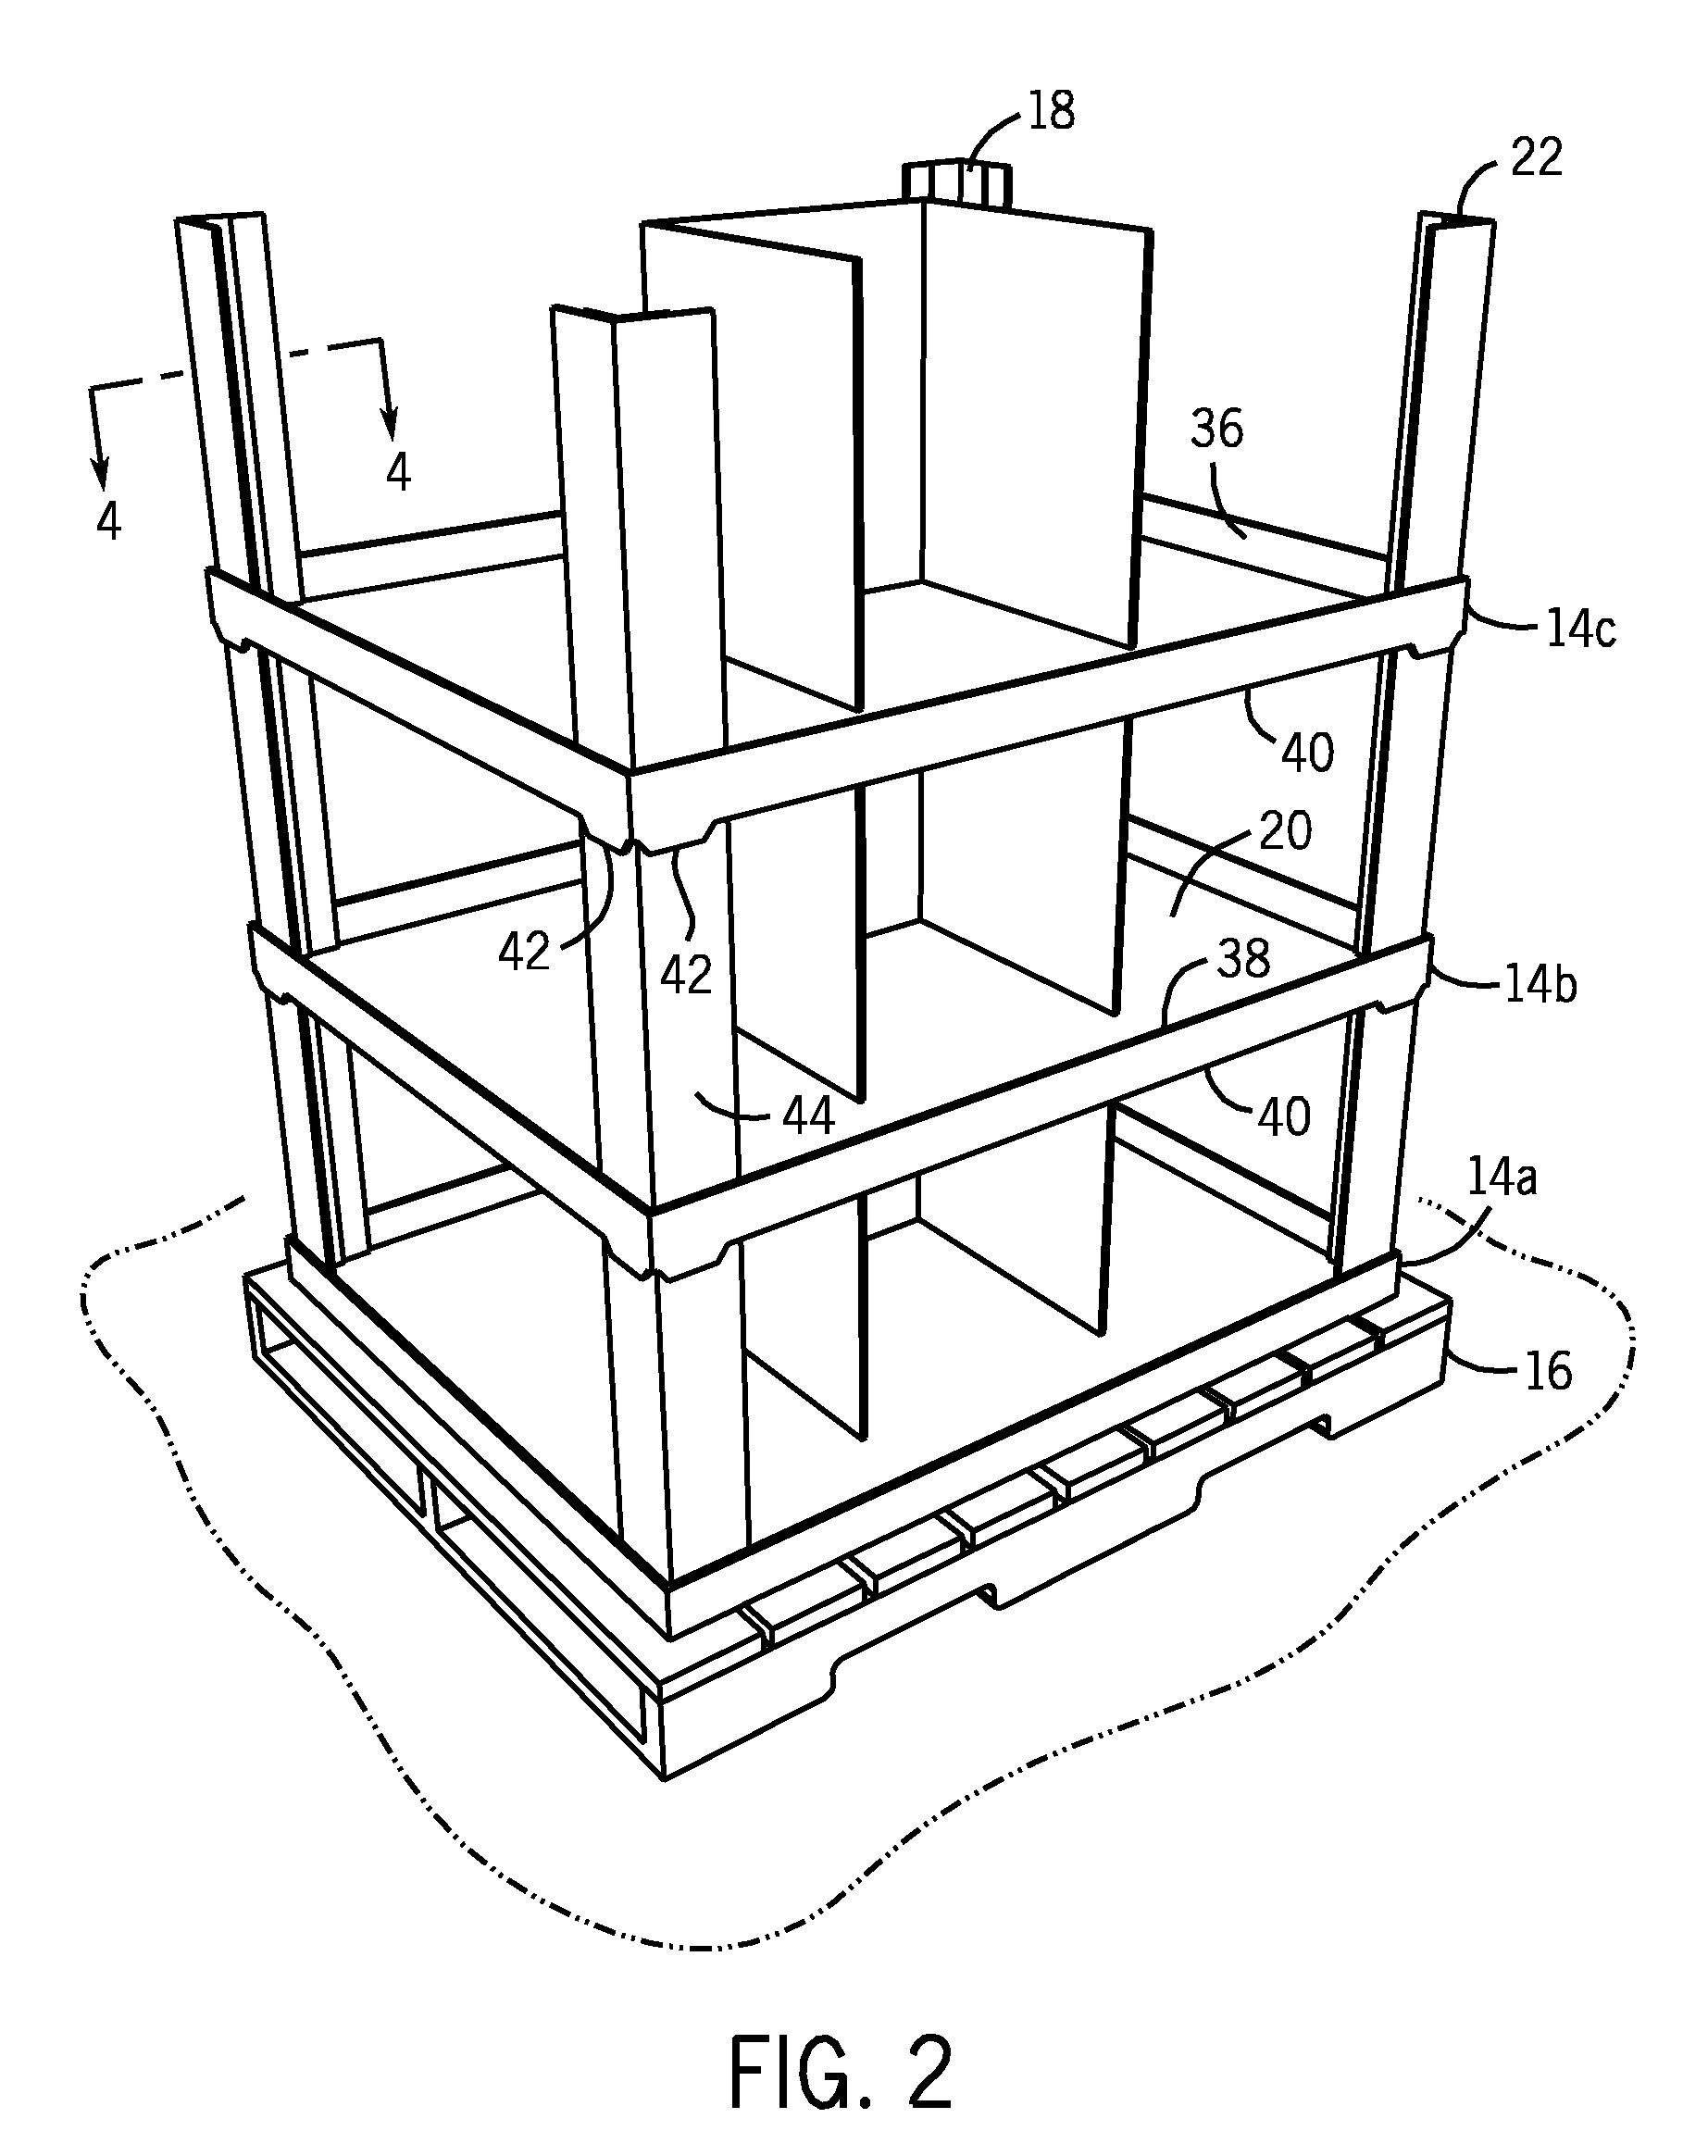 Stackable pallet system including v-shaped corner supports